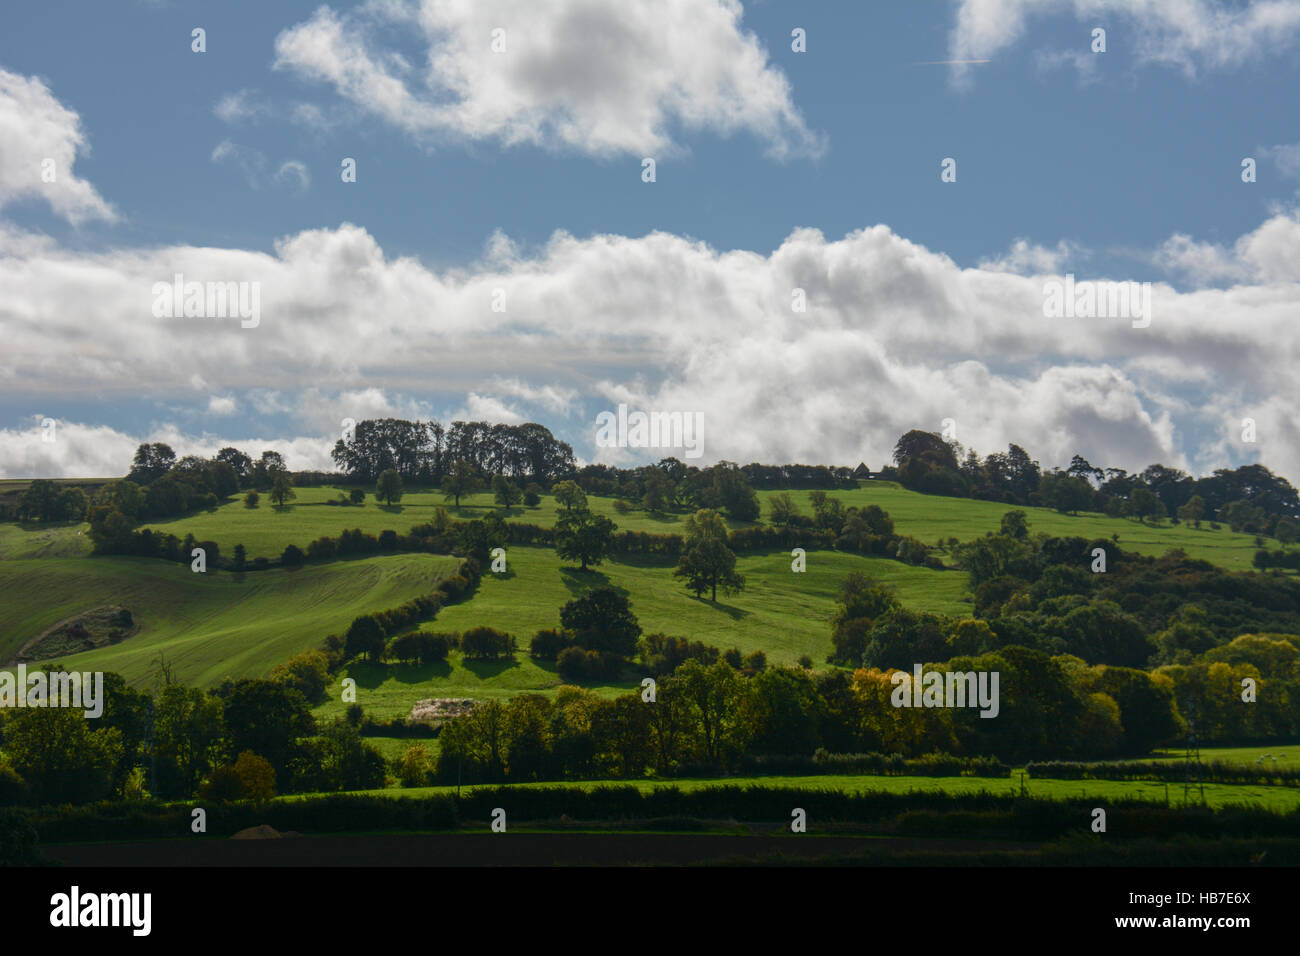 Typische englische Landschaft mit sanften Hügeln unter flauschigen weißen Cumulus-Wolken am blauen Himmel, Hecken und kleine Felder Stockfoto